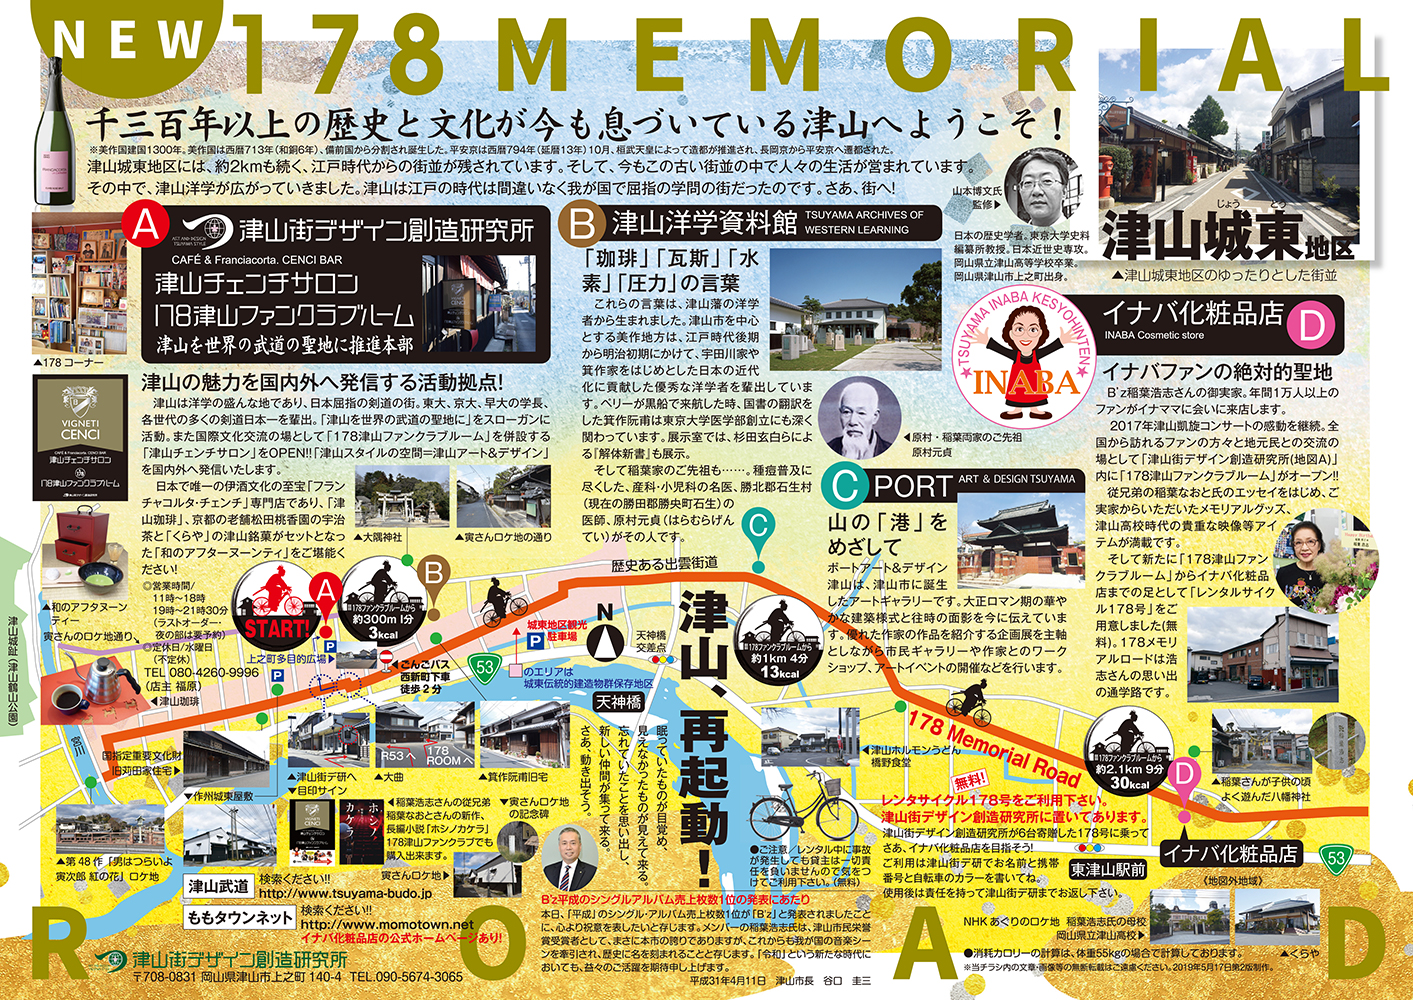 NEW 178 MEMORIAL